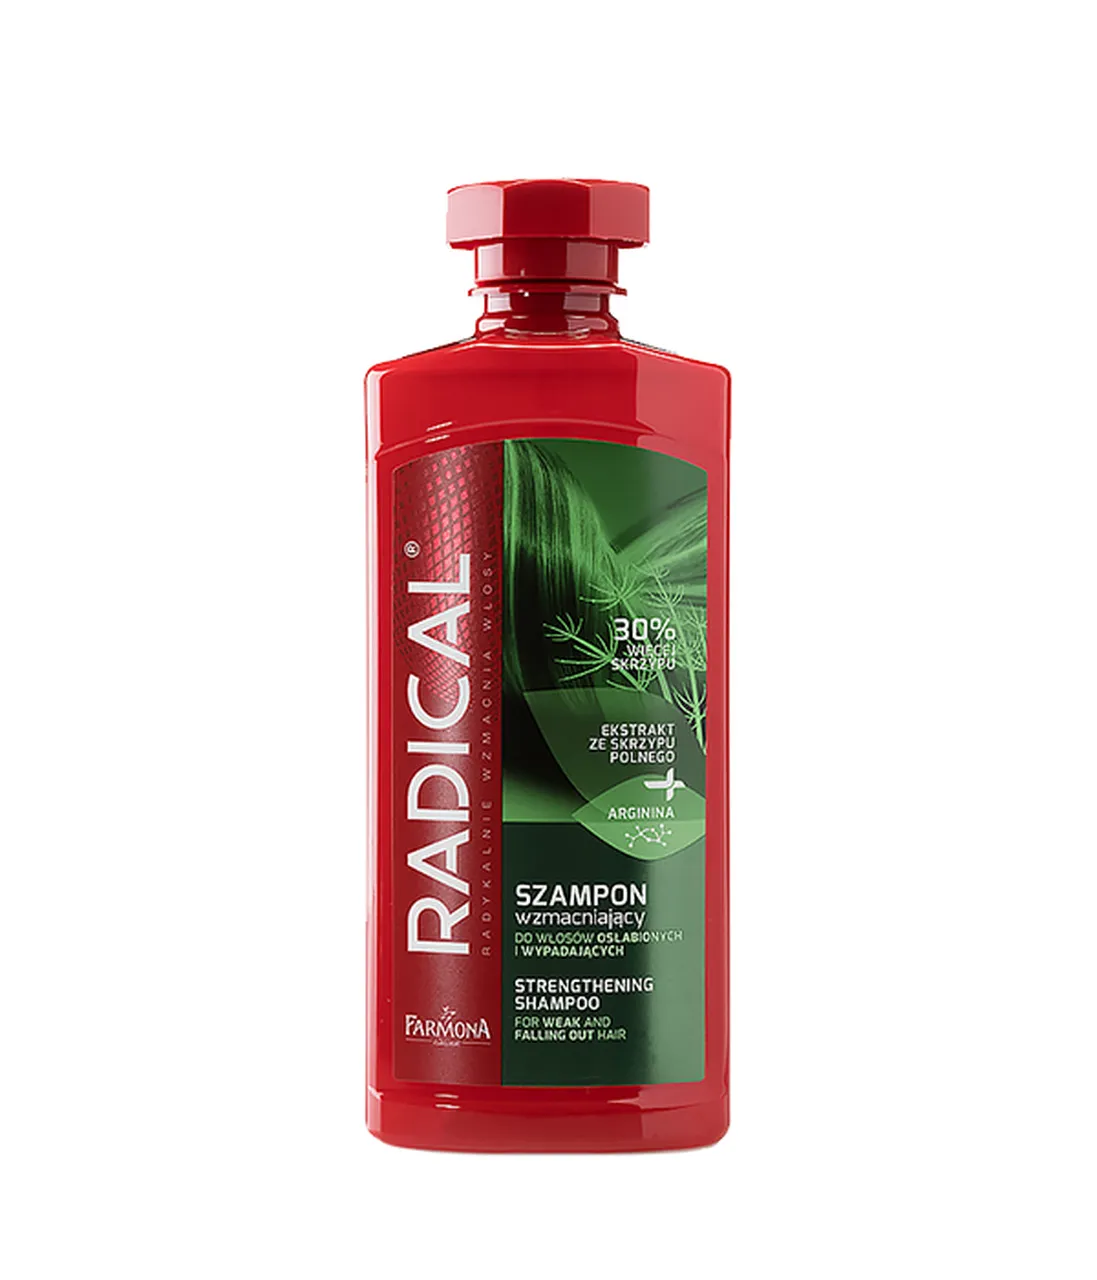 Radical szampon wzmacniający do włosów osłabionych i wypadających, 400 ml 